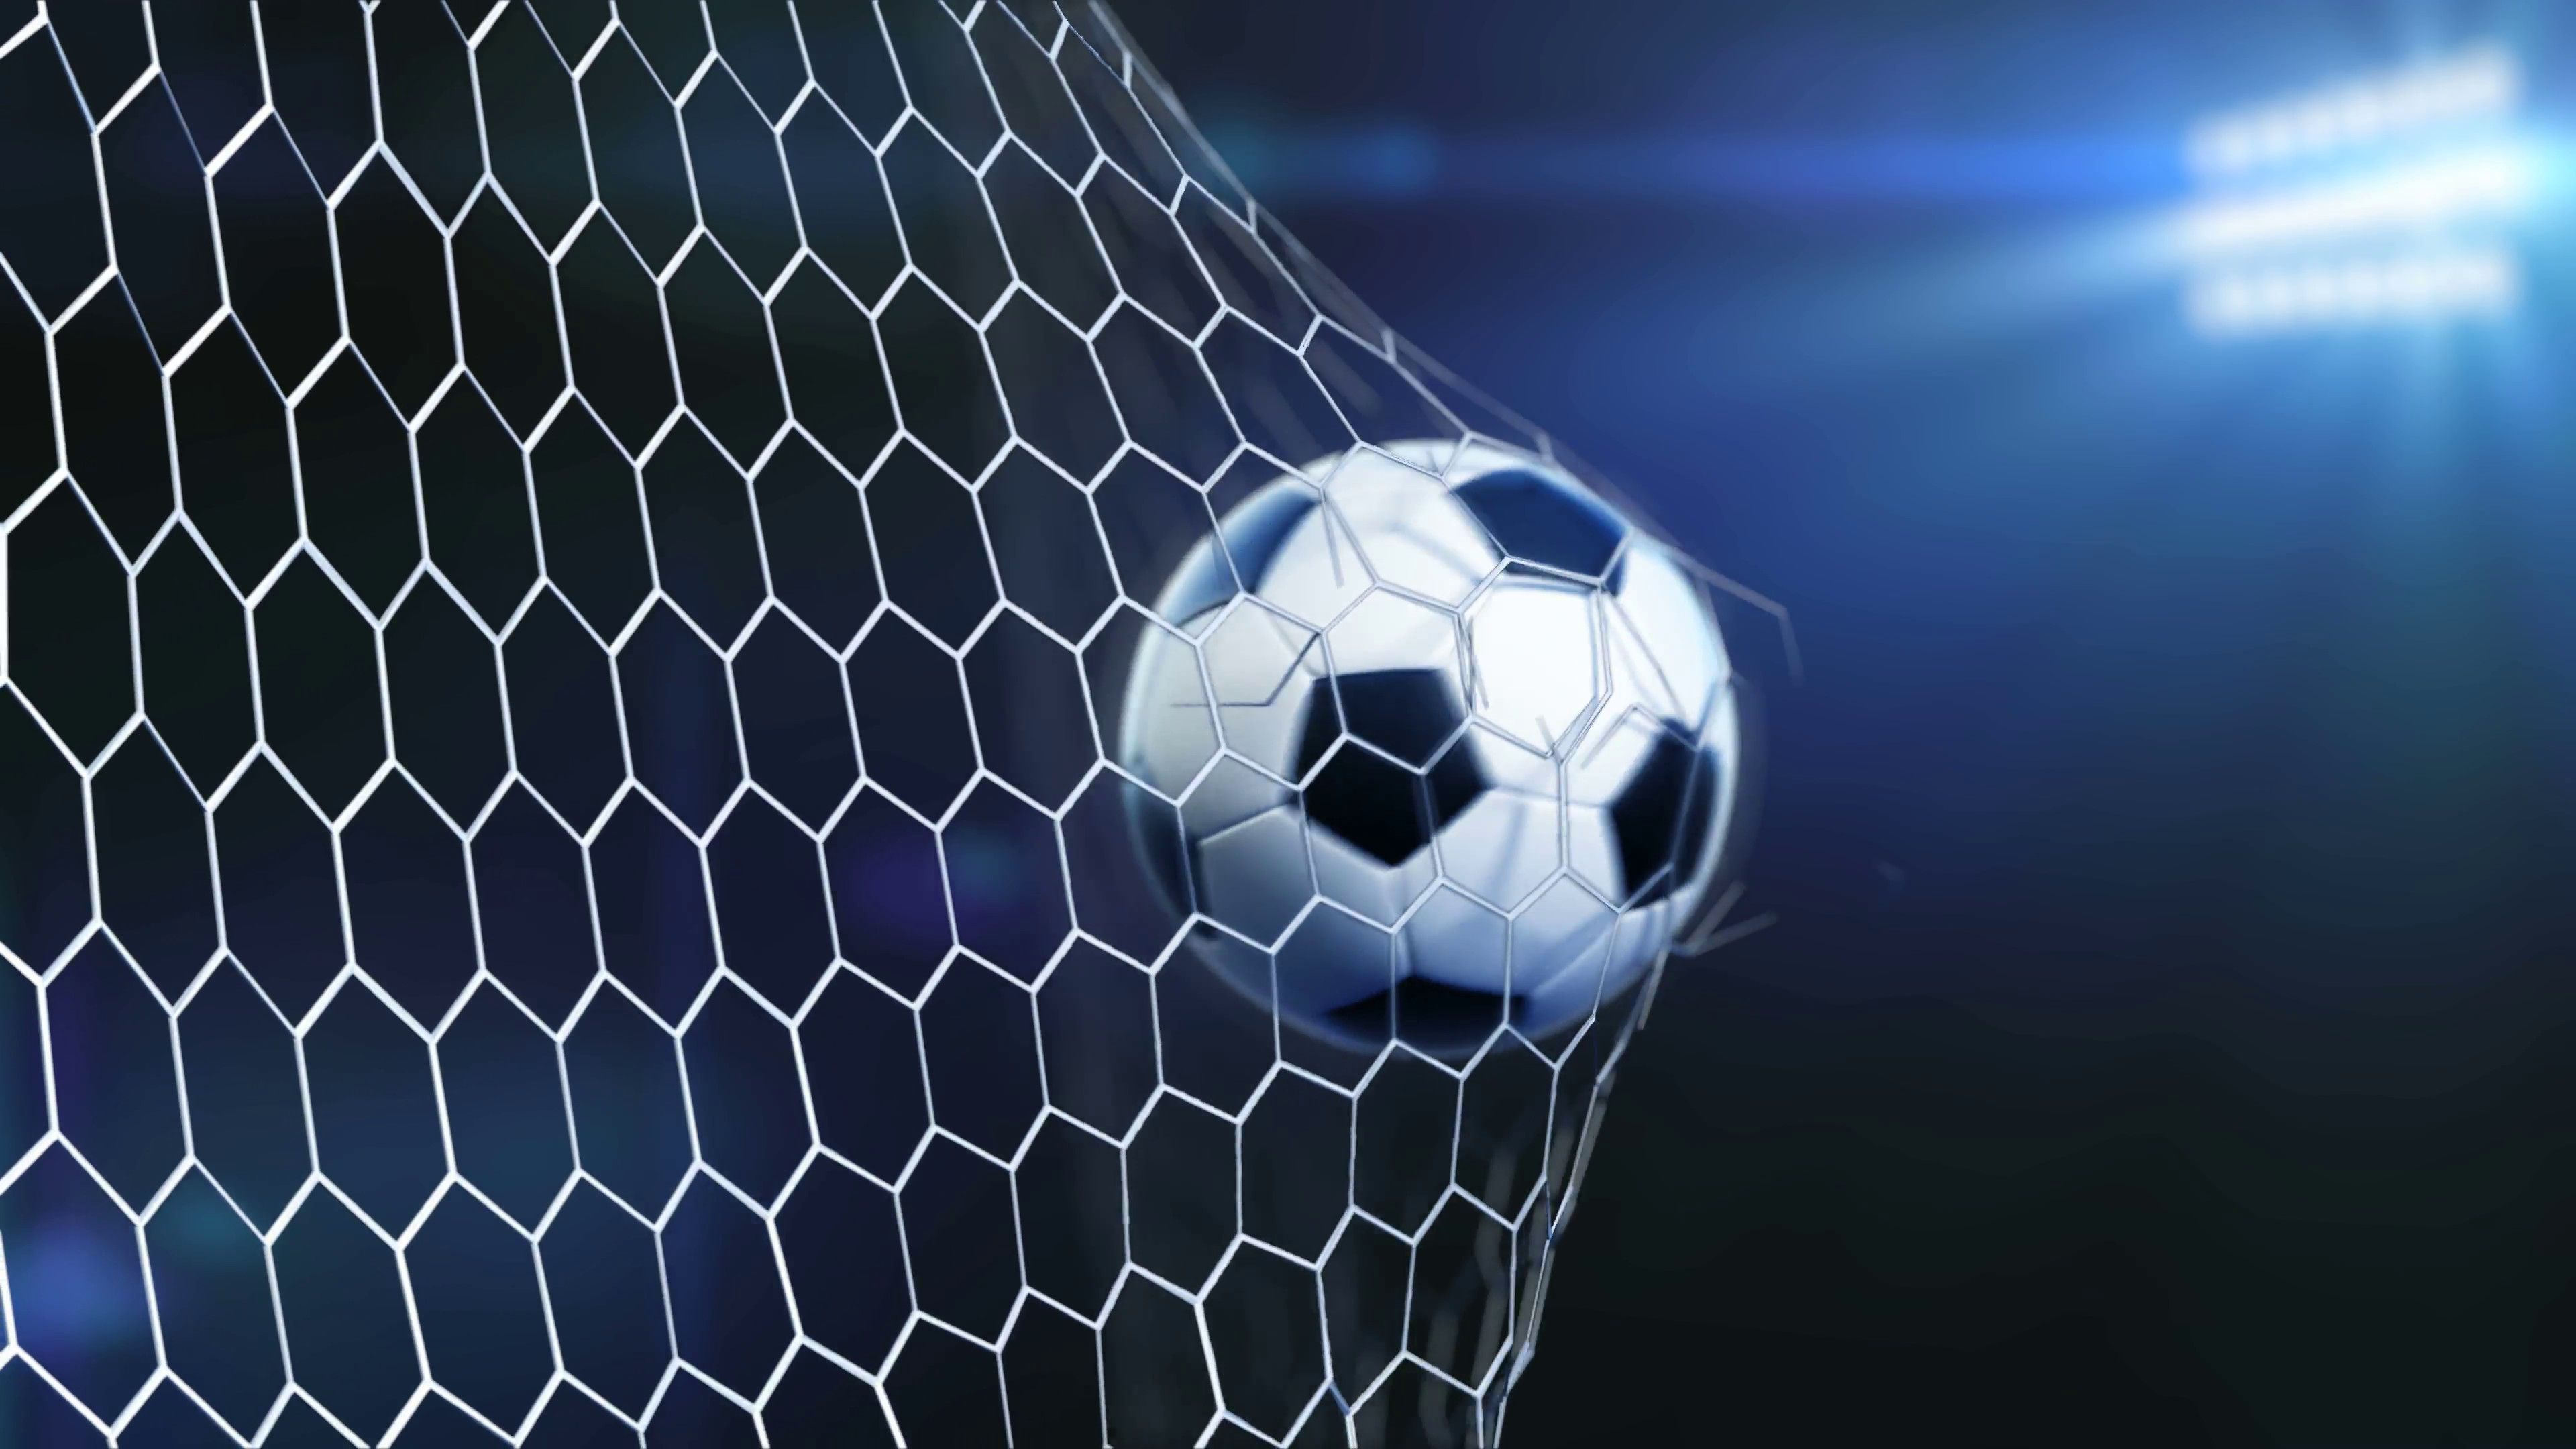 Soccer Background Image